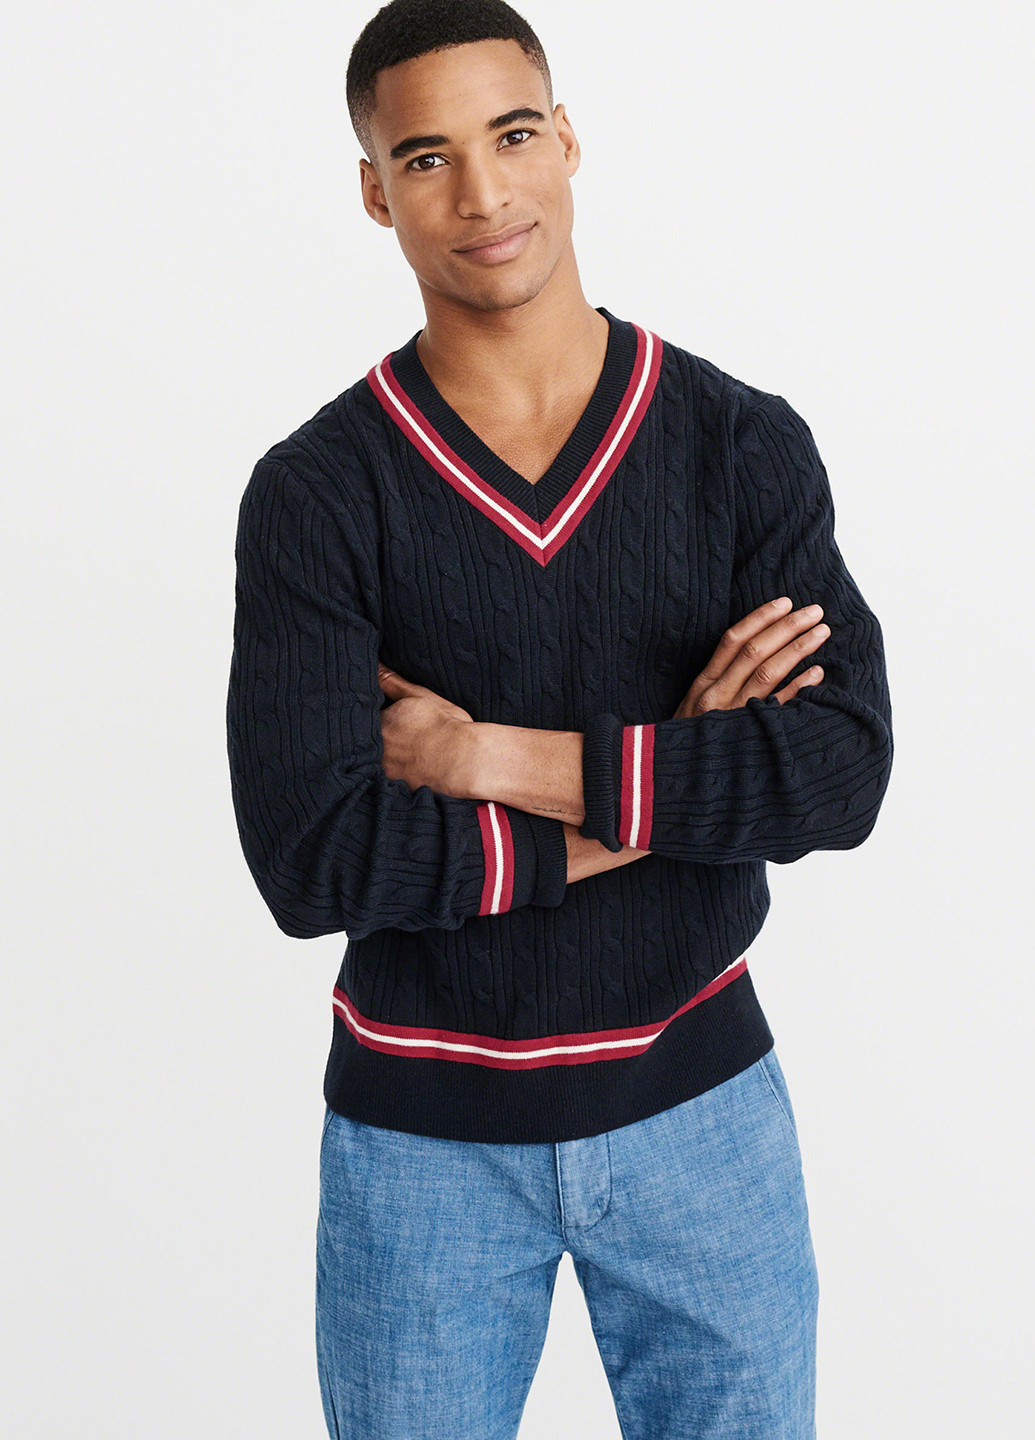 Черный демисезонный пуловер пуловер Abercrombie & Fitch